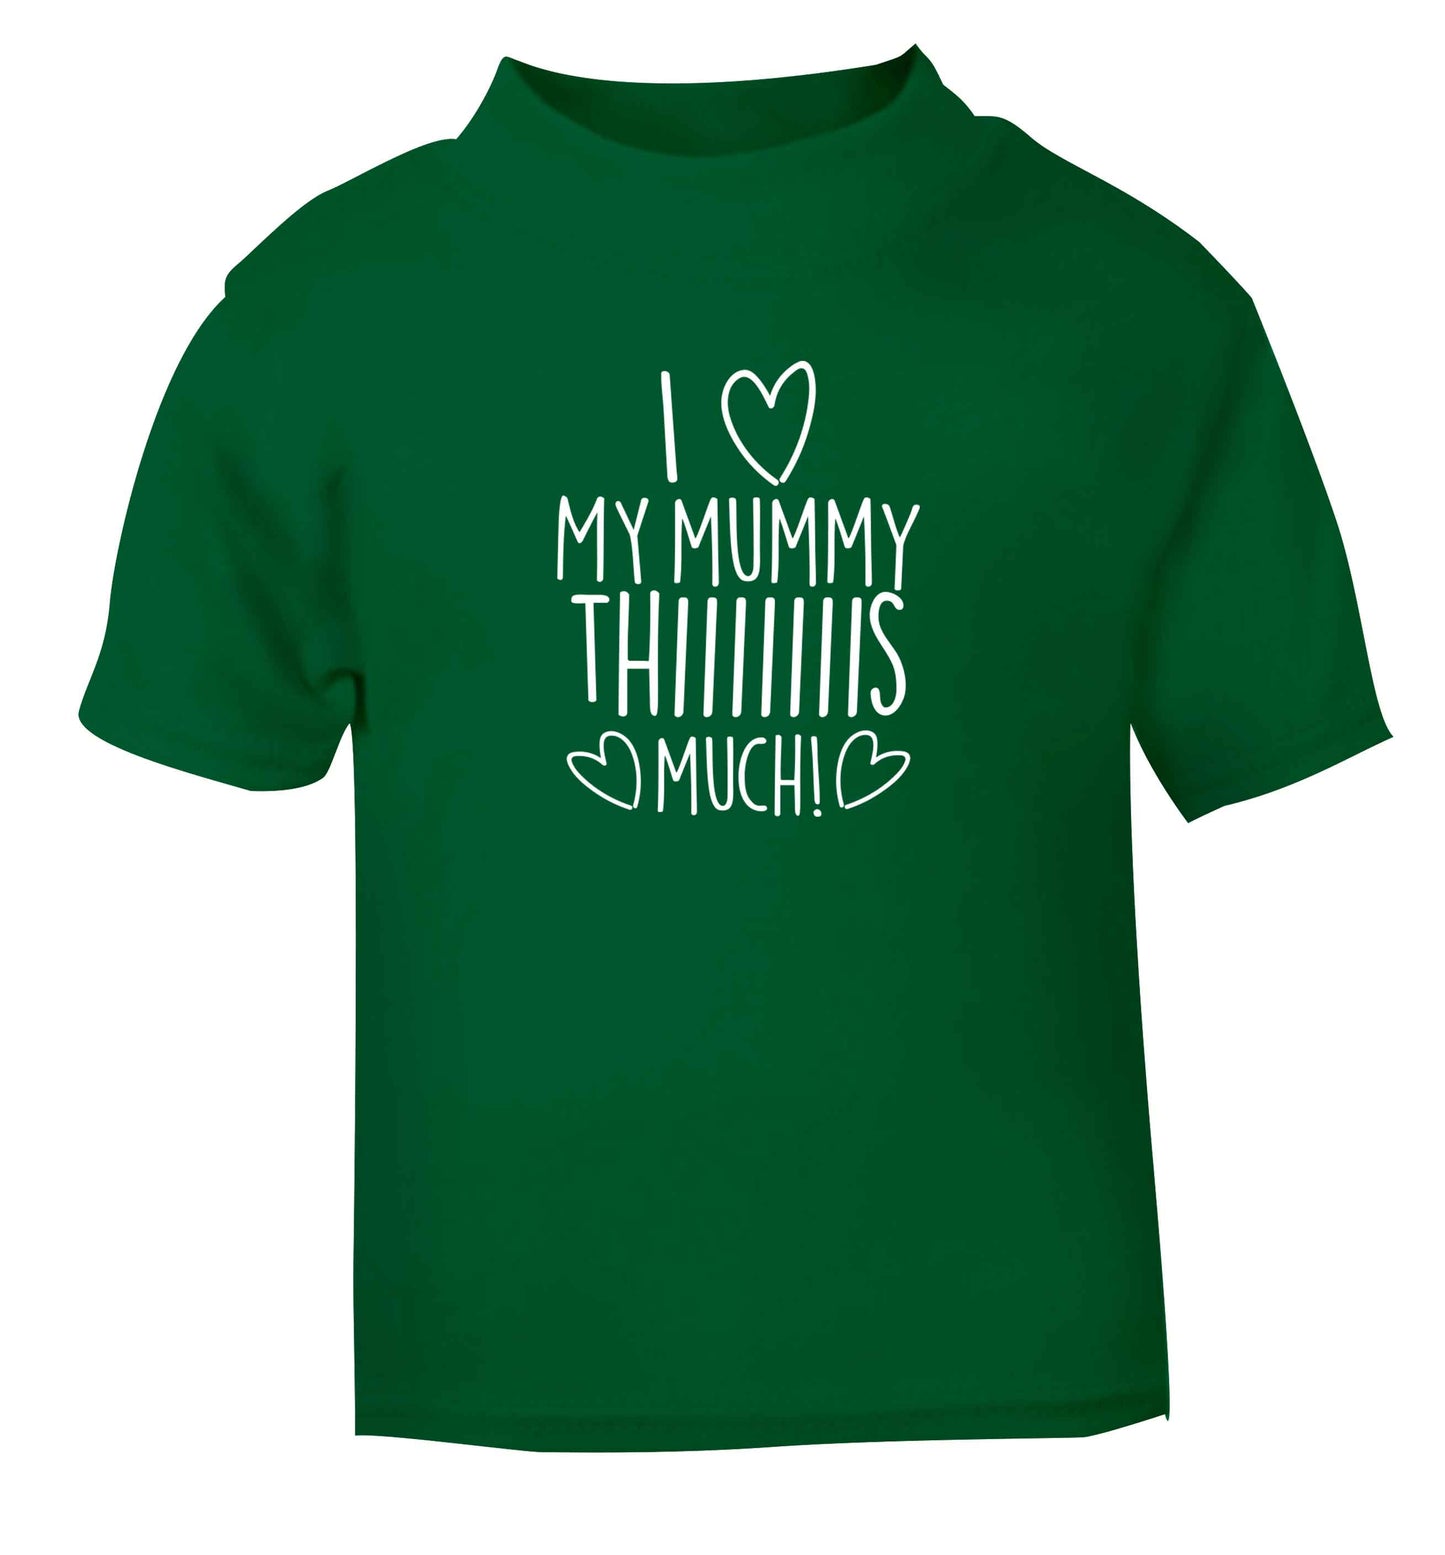 I love my mummy thiiiiis much! green baby toddler Tshirt 2 Years